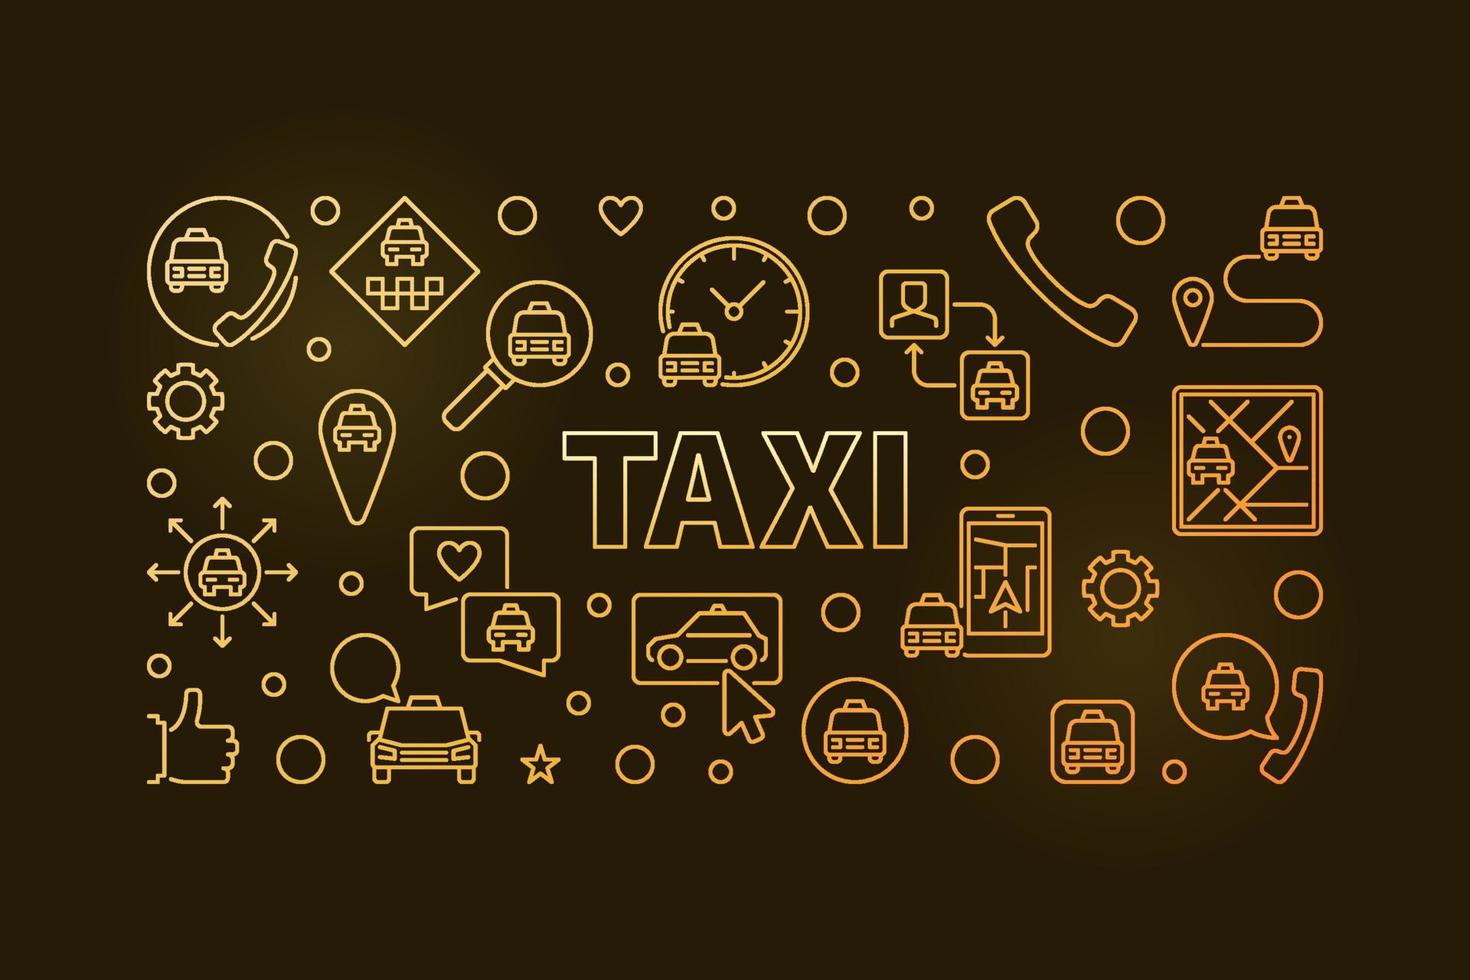 ilustração ou banner horizontal colorido linear conceito de vetor de táxi